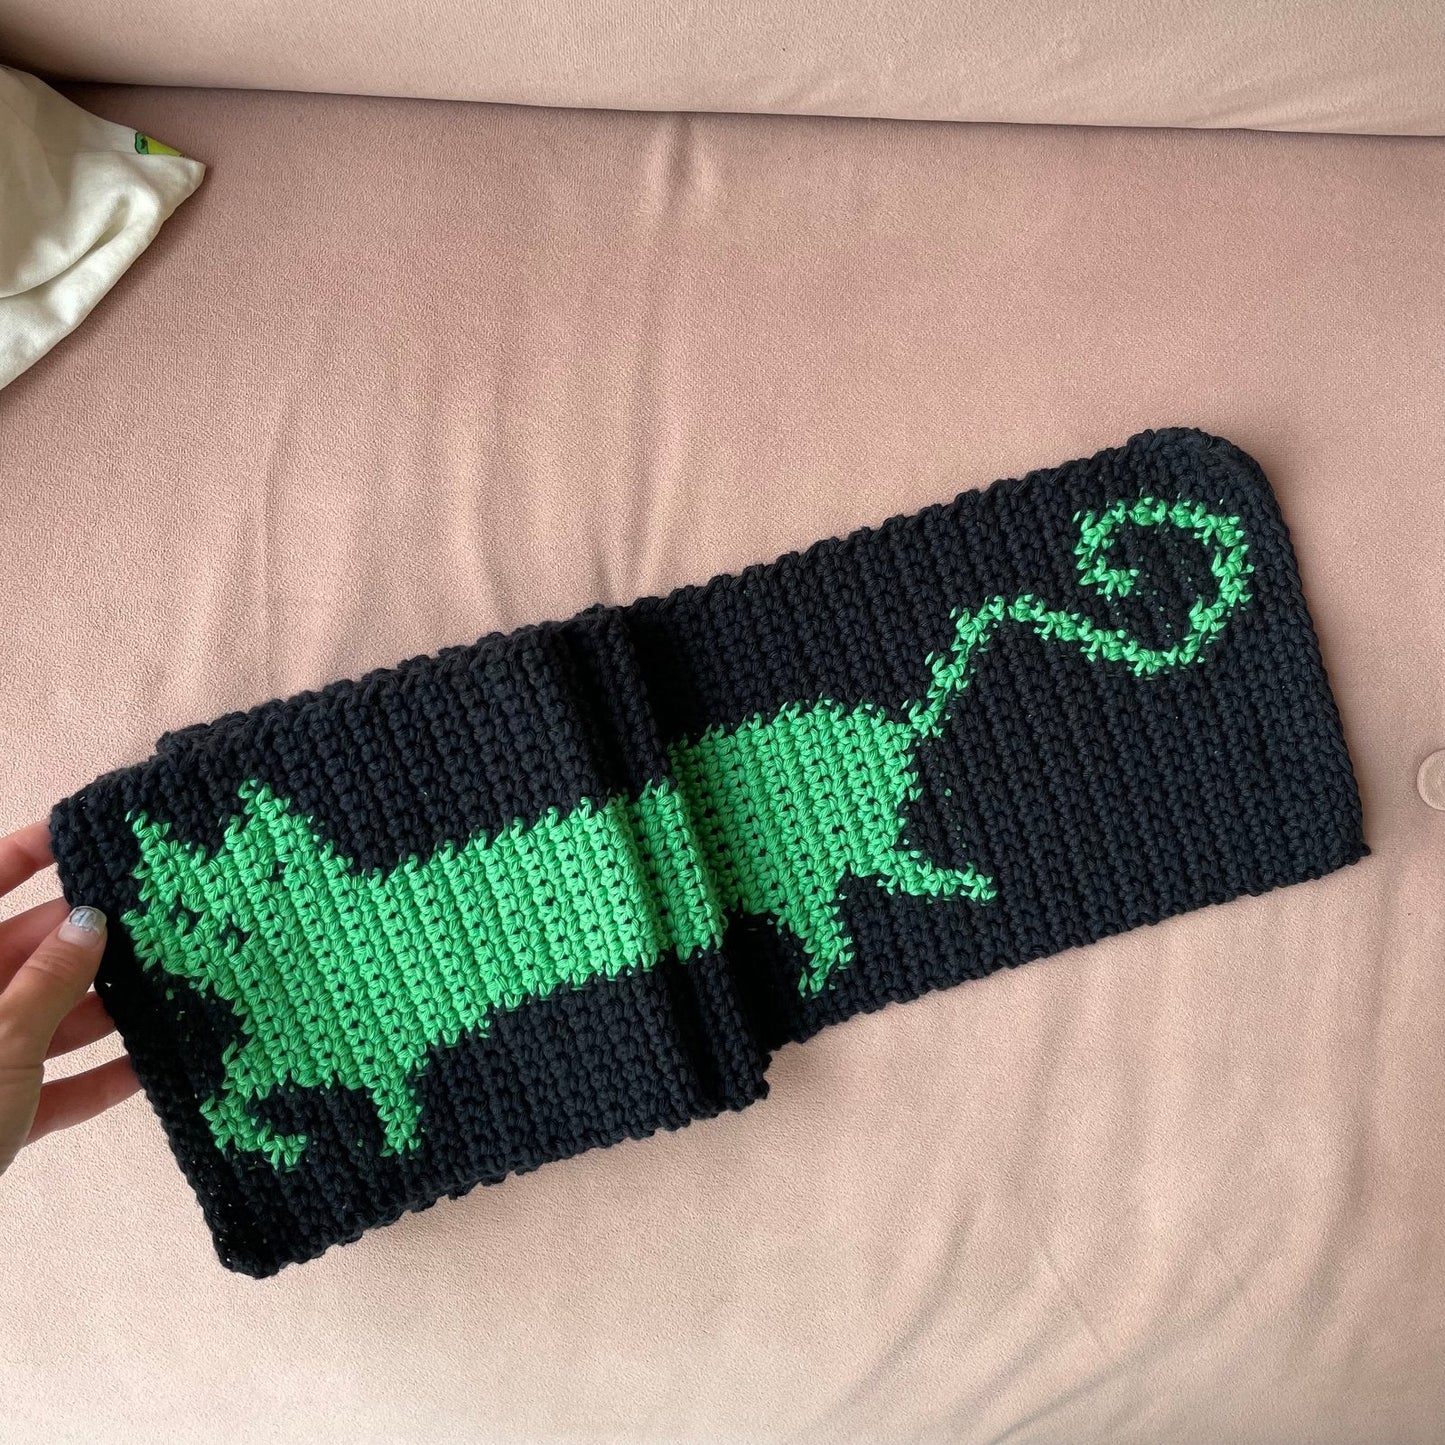 Crochet scarf pattern - kitty cat scarf